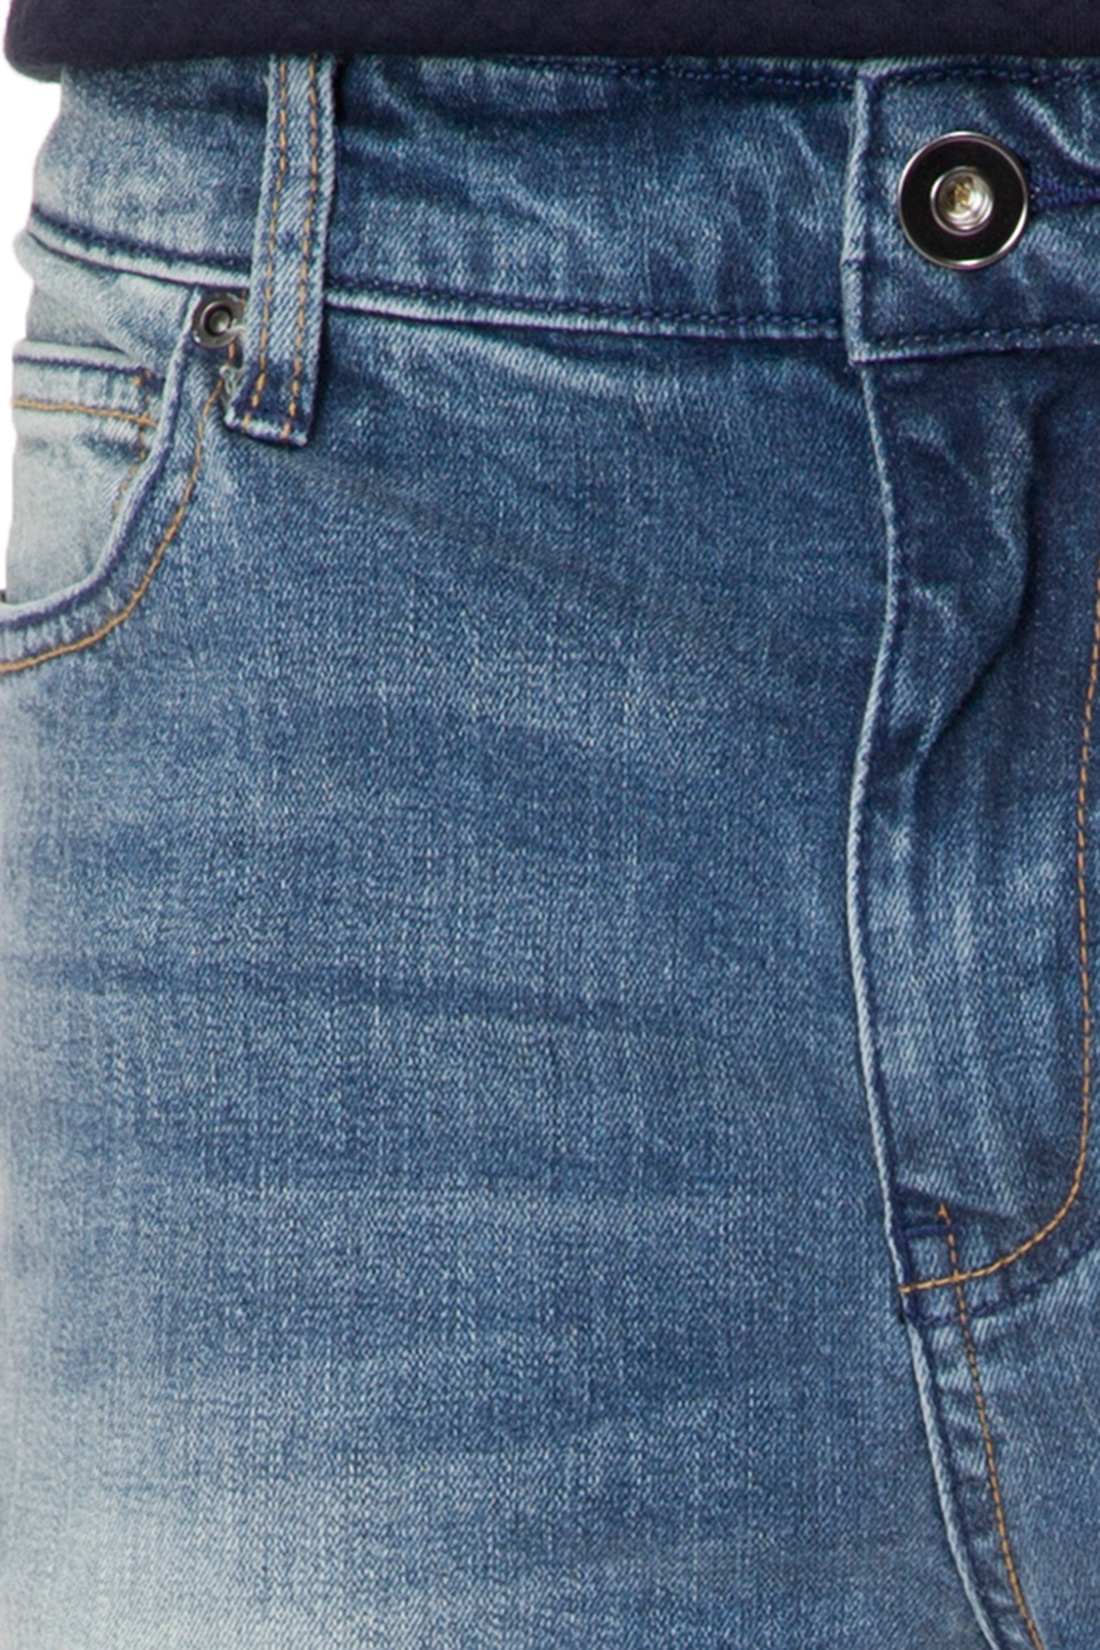 Зауженные джинсы с выбеленностями (арт. baon B807005), размер 33, цвет blue denim#голубой Зауженные джинсы с выбеленностями (арт. baon B807005) - фото 4